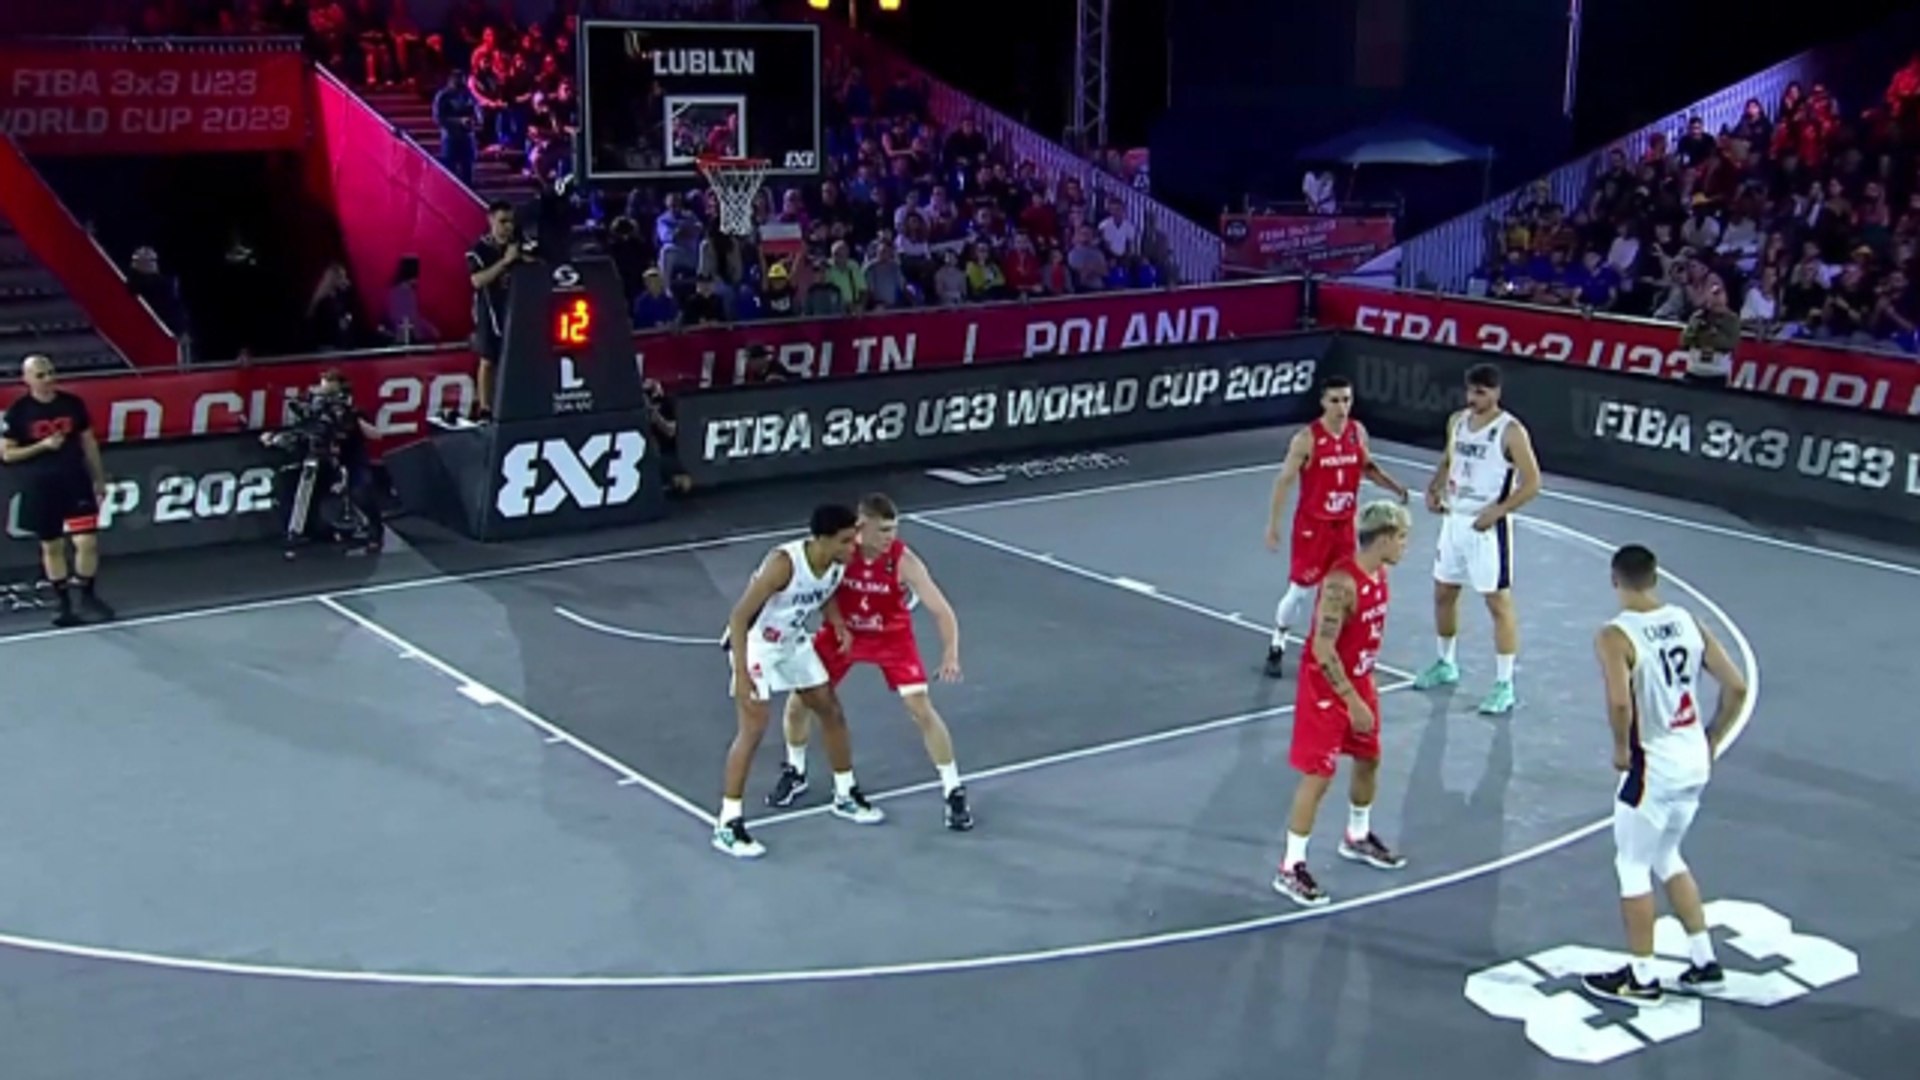 Le replay de France - Pologne - Basket 3x3 - Coupe du monde U23 - Vidéo  Dailymotion